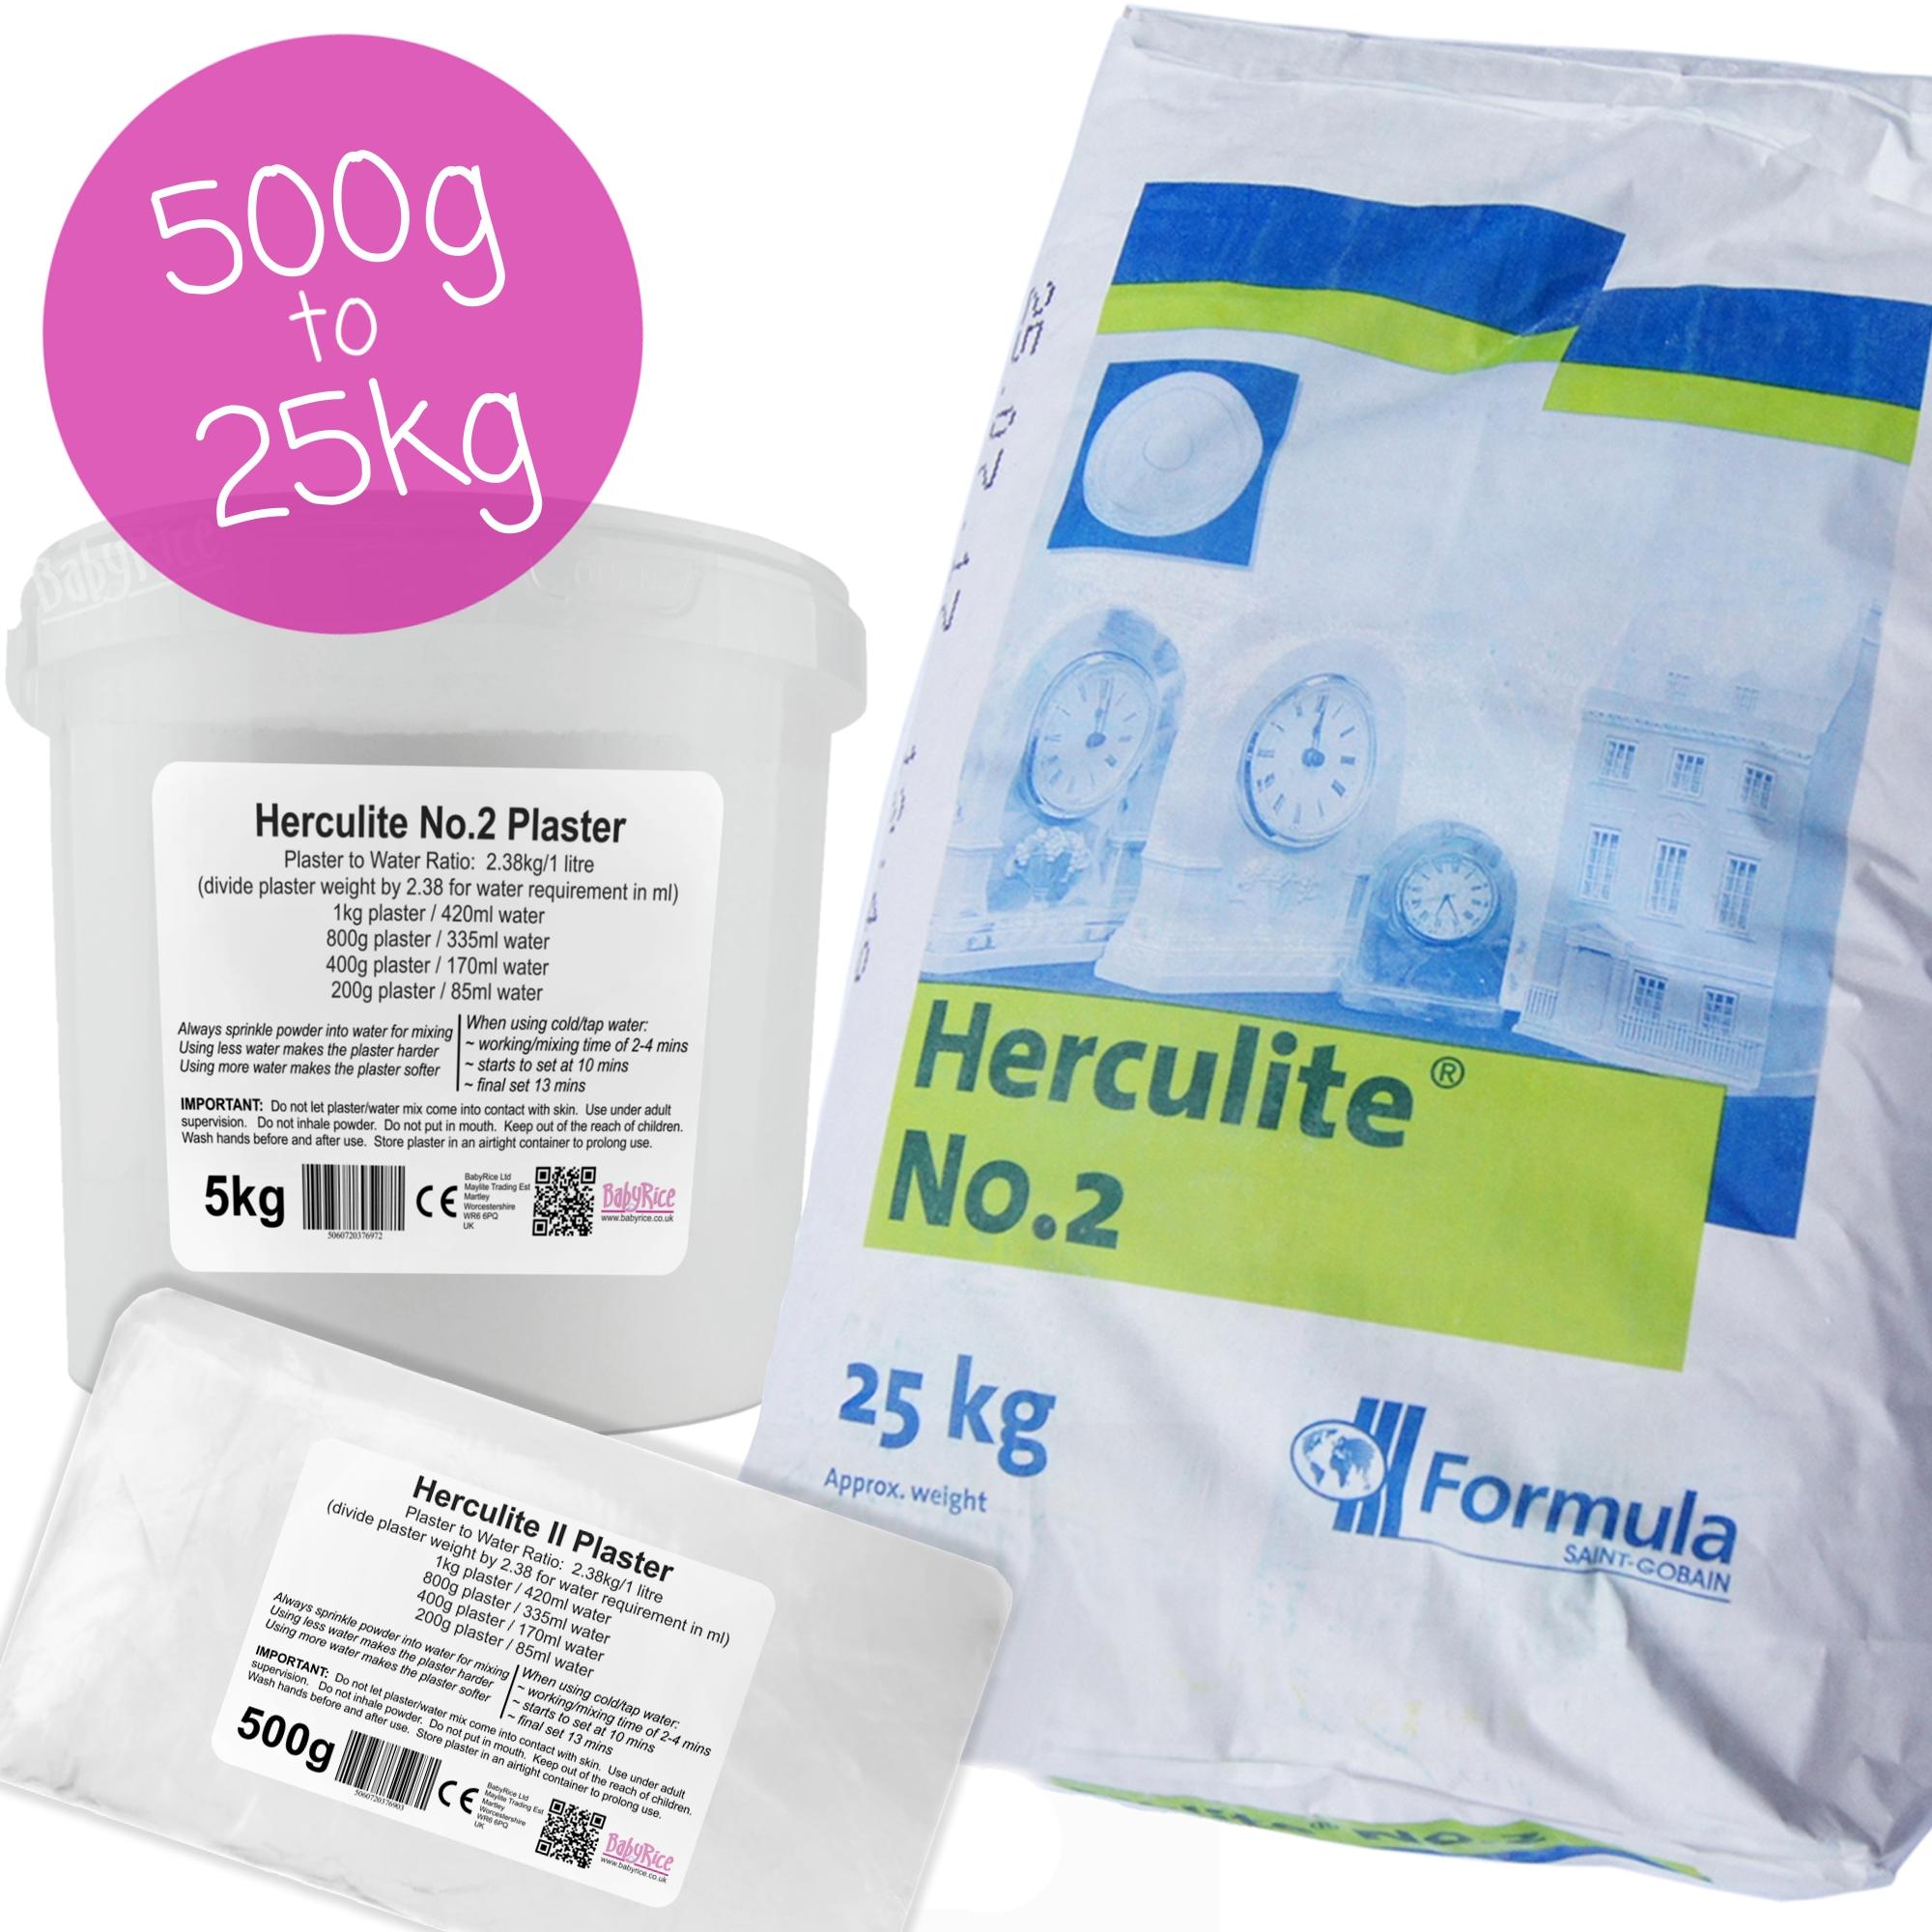 Herculite 2 Casting Plaster 500g to 25kg